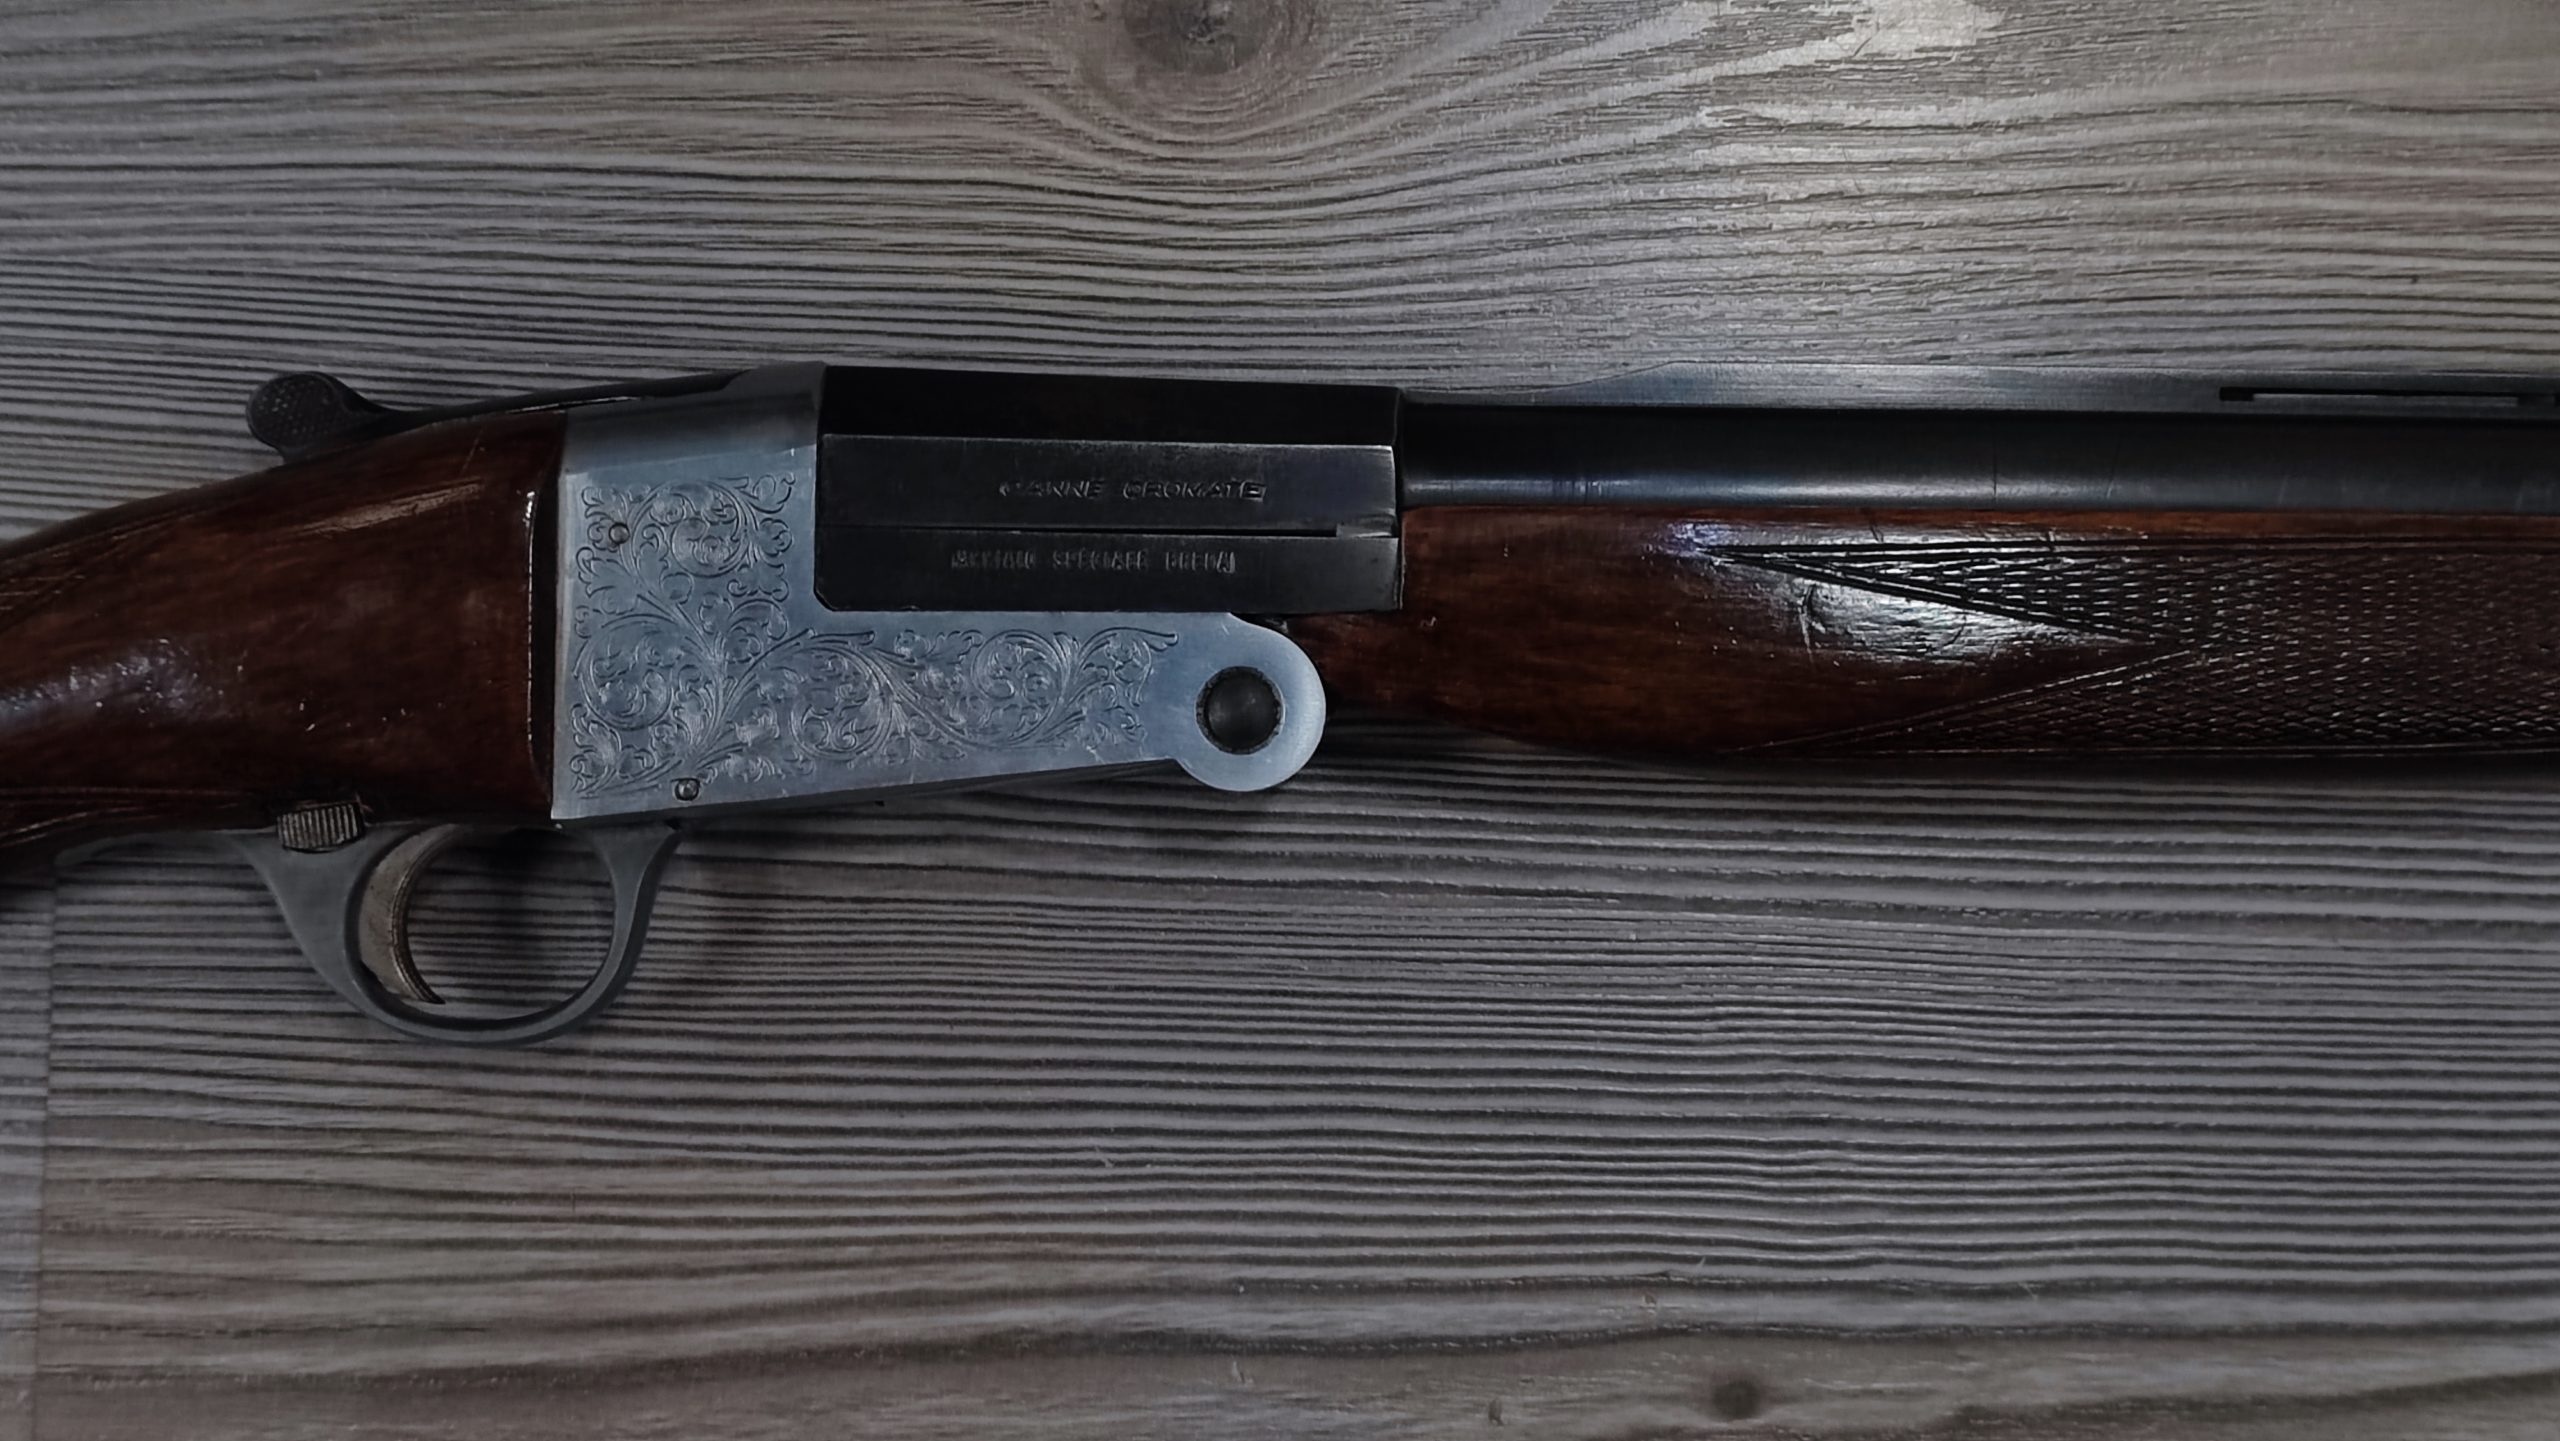 Fusil de chasse à un coup calibre 12 de marque CBC